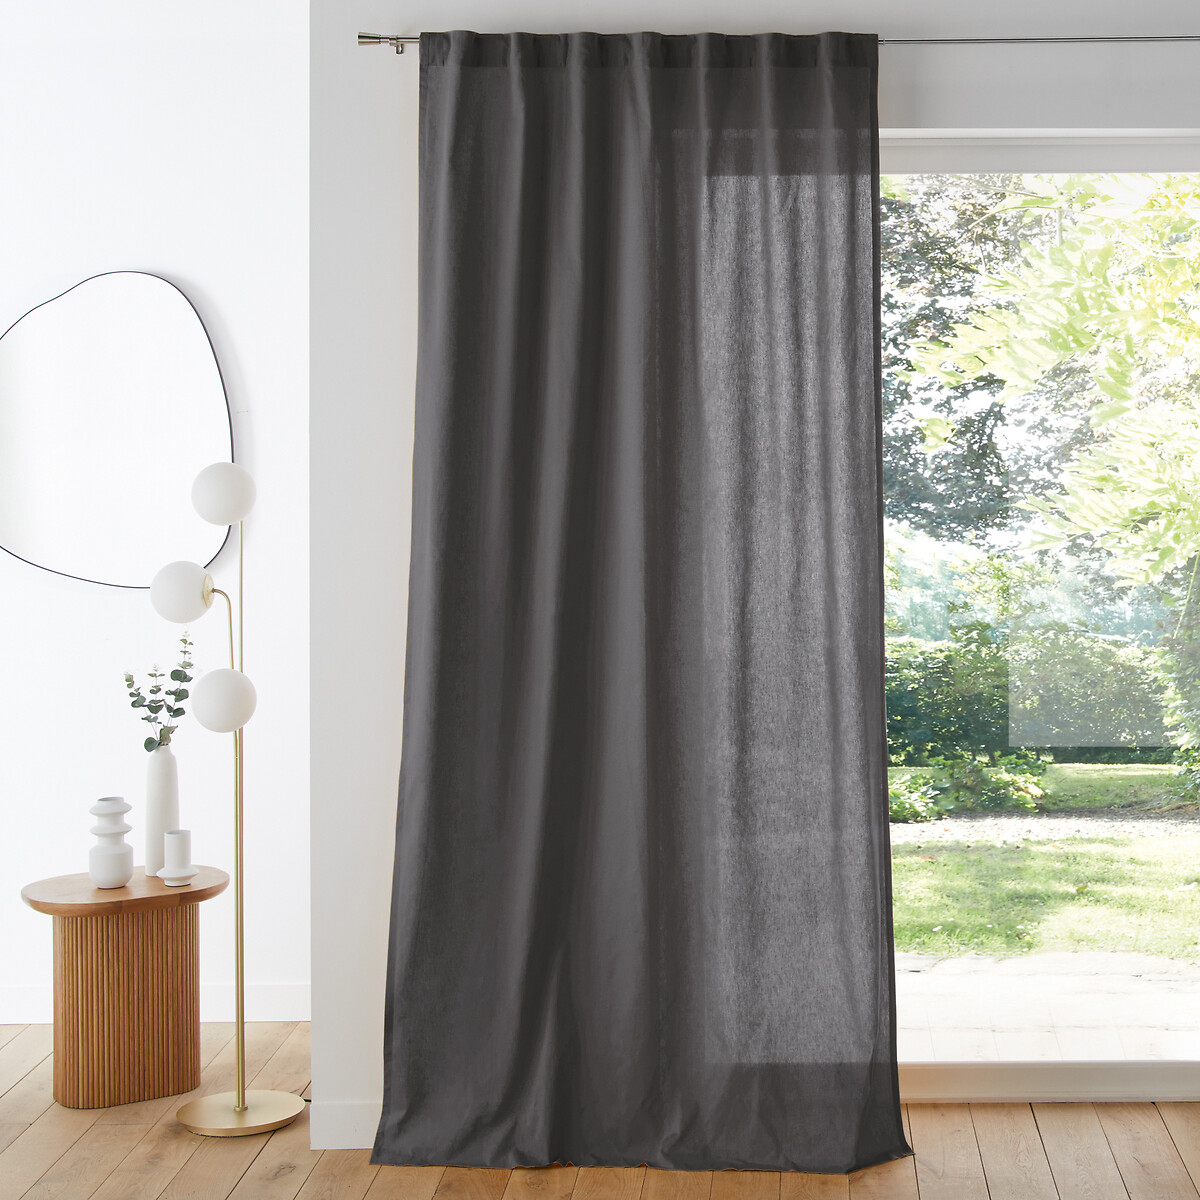 Cinta para bajos especial cortinas | Accesorios para cortinas